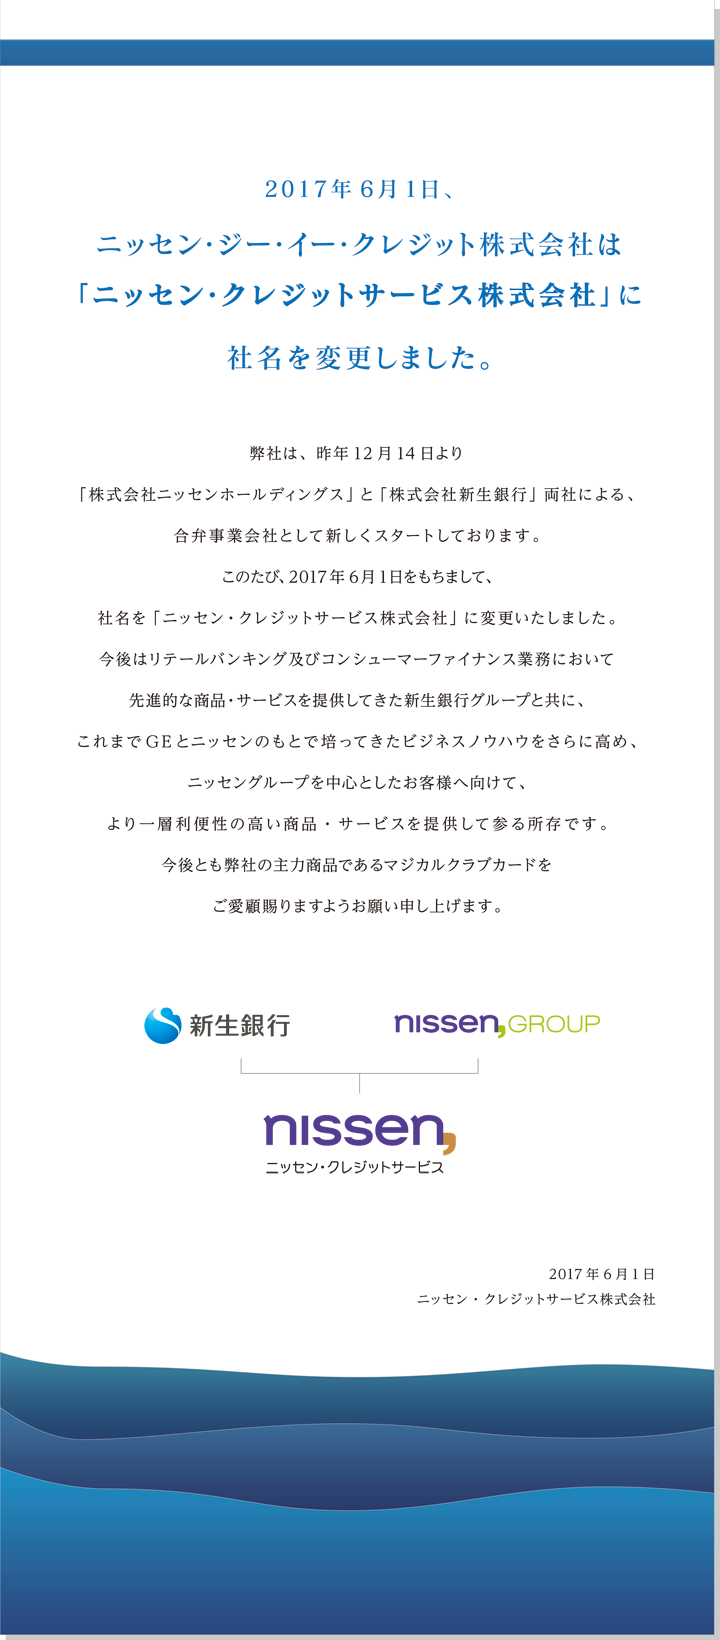 2017年6月1日、ニッセン・ジー・イー・クレジット株式会社は「ニッセン・クレジットサービス株式会社」に社名を変更しました。